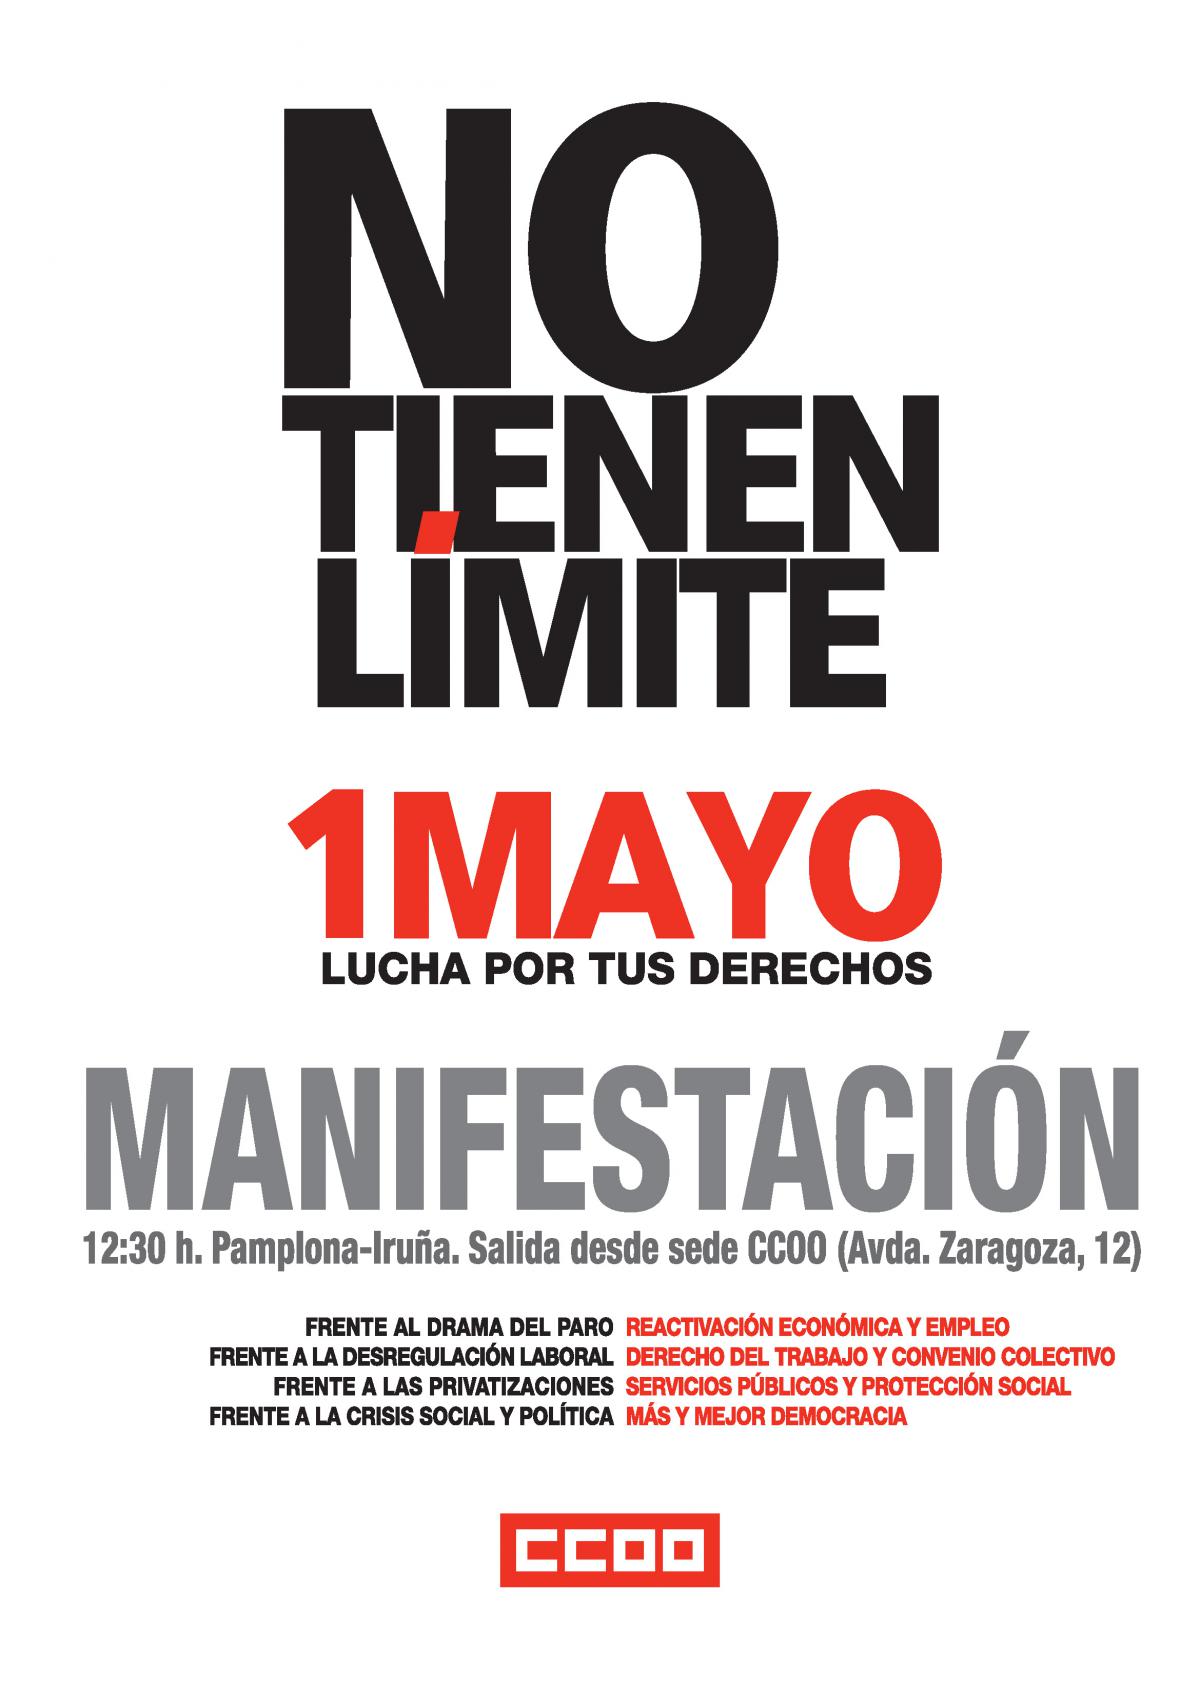 Cartel que anuncia la manifestacin del 1 de mayo